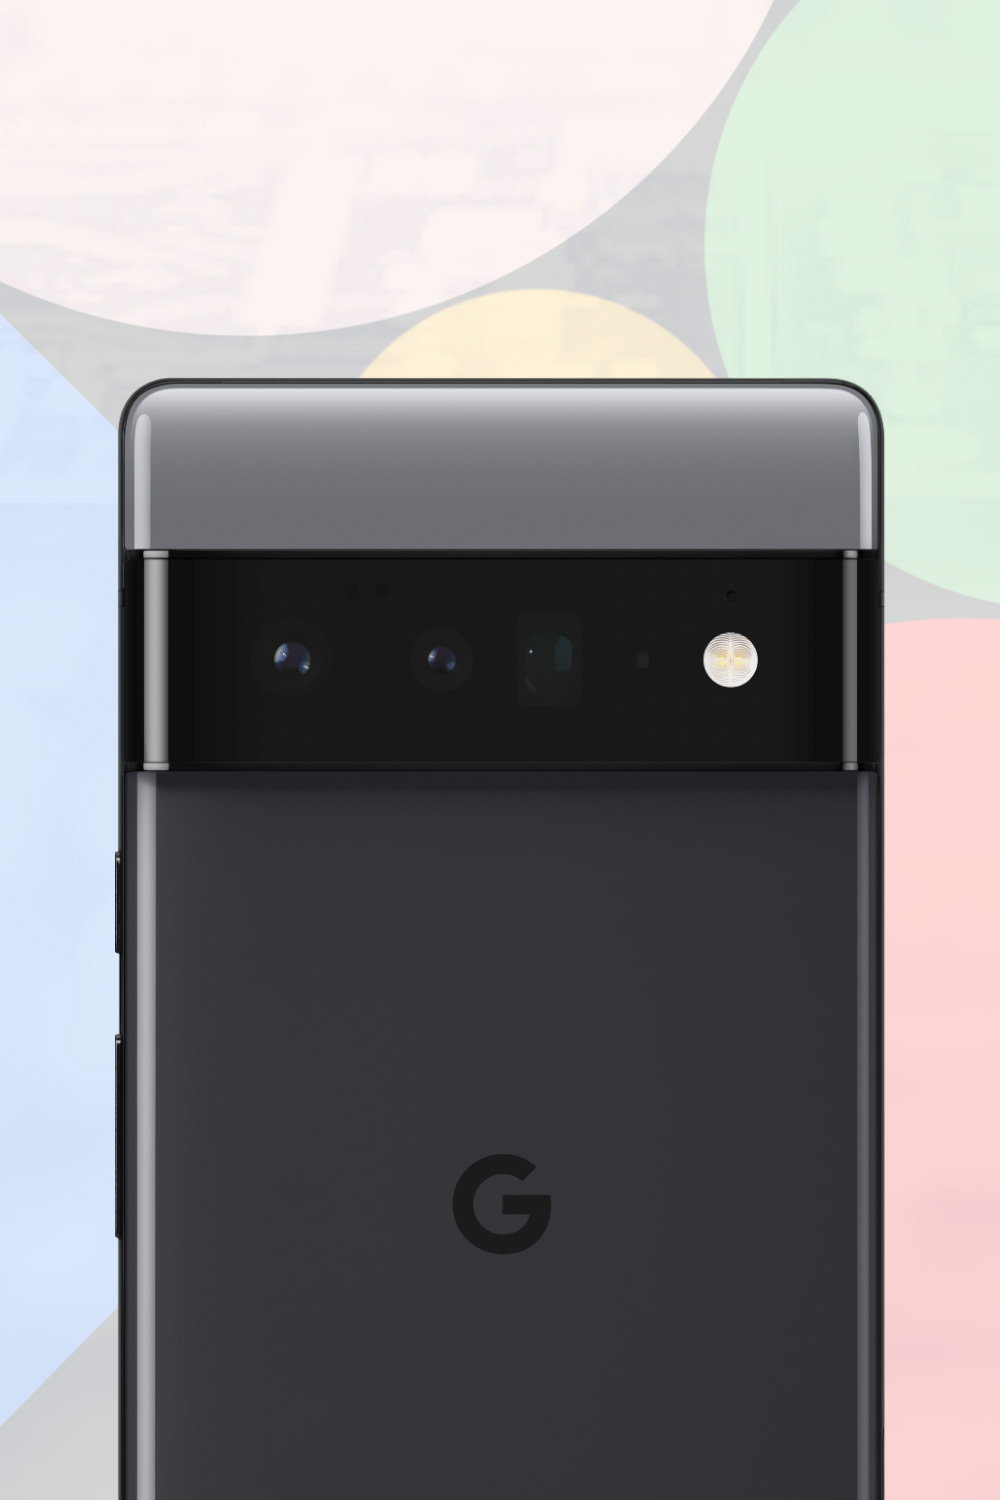 Google Pixel 6 Pro Teardown